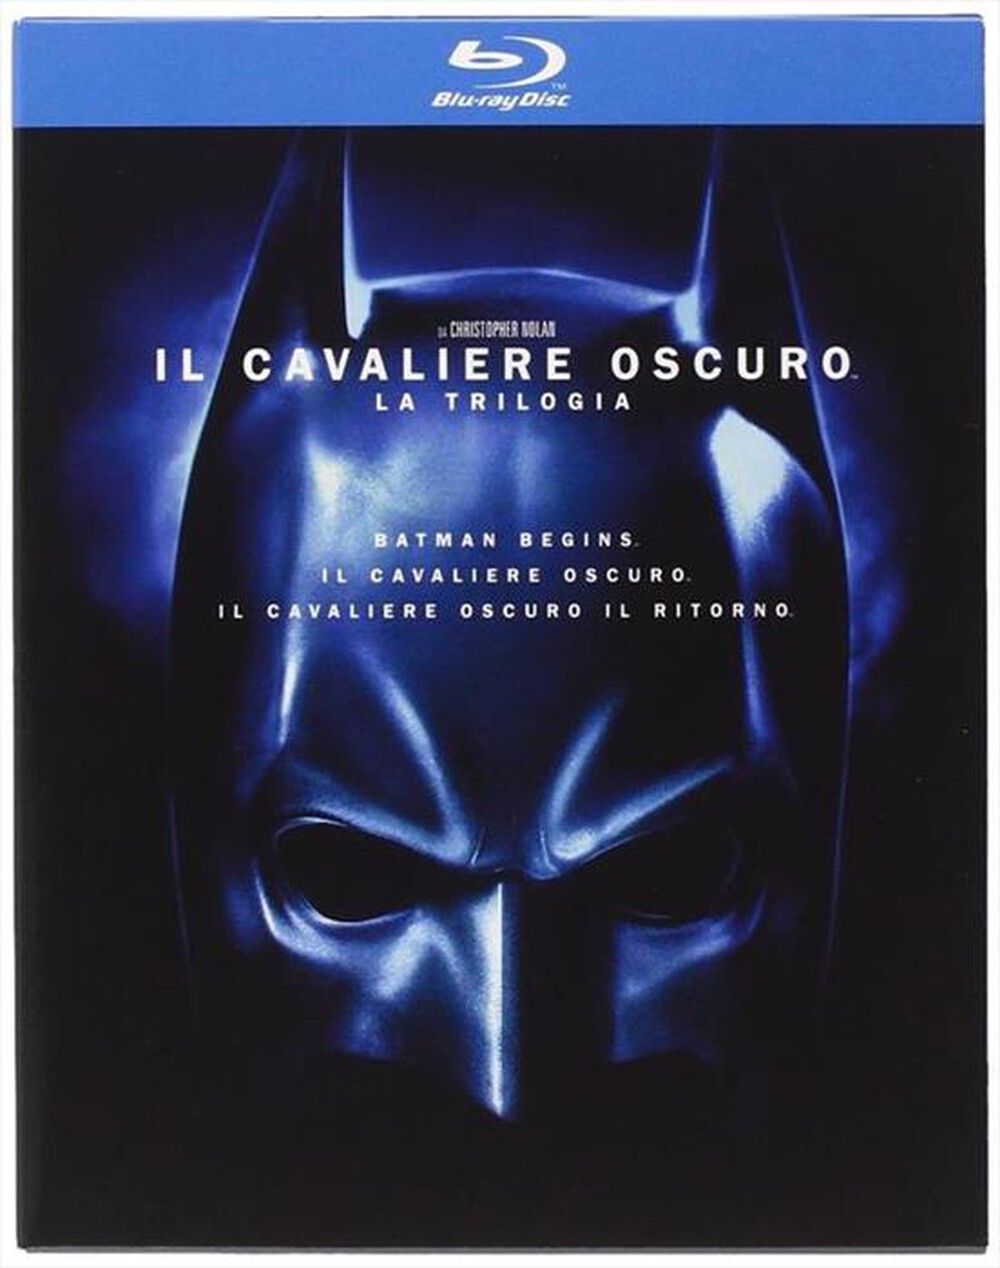 "WARNER HOME VIDEO - Cavaliere Oscuro (Il) - Trilogia (5 Blu-Ray) - "